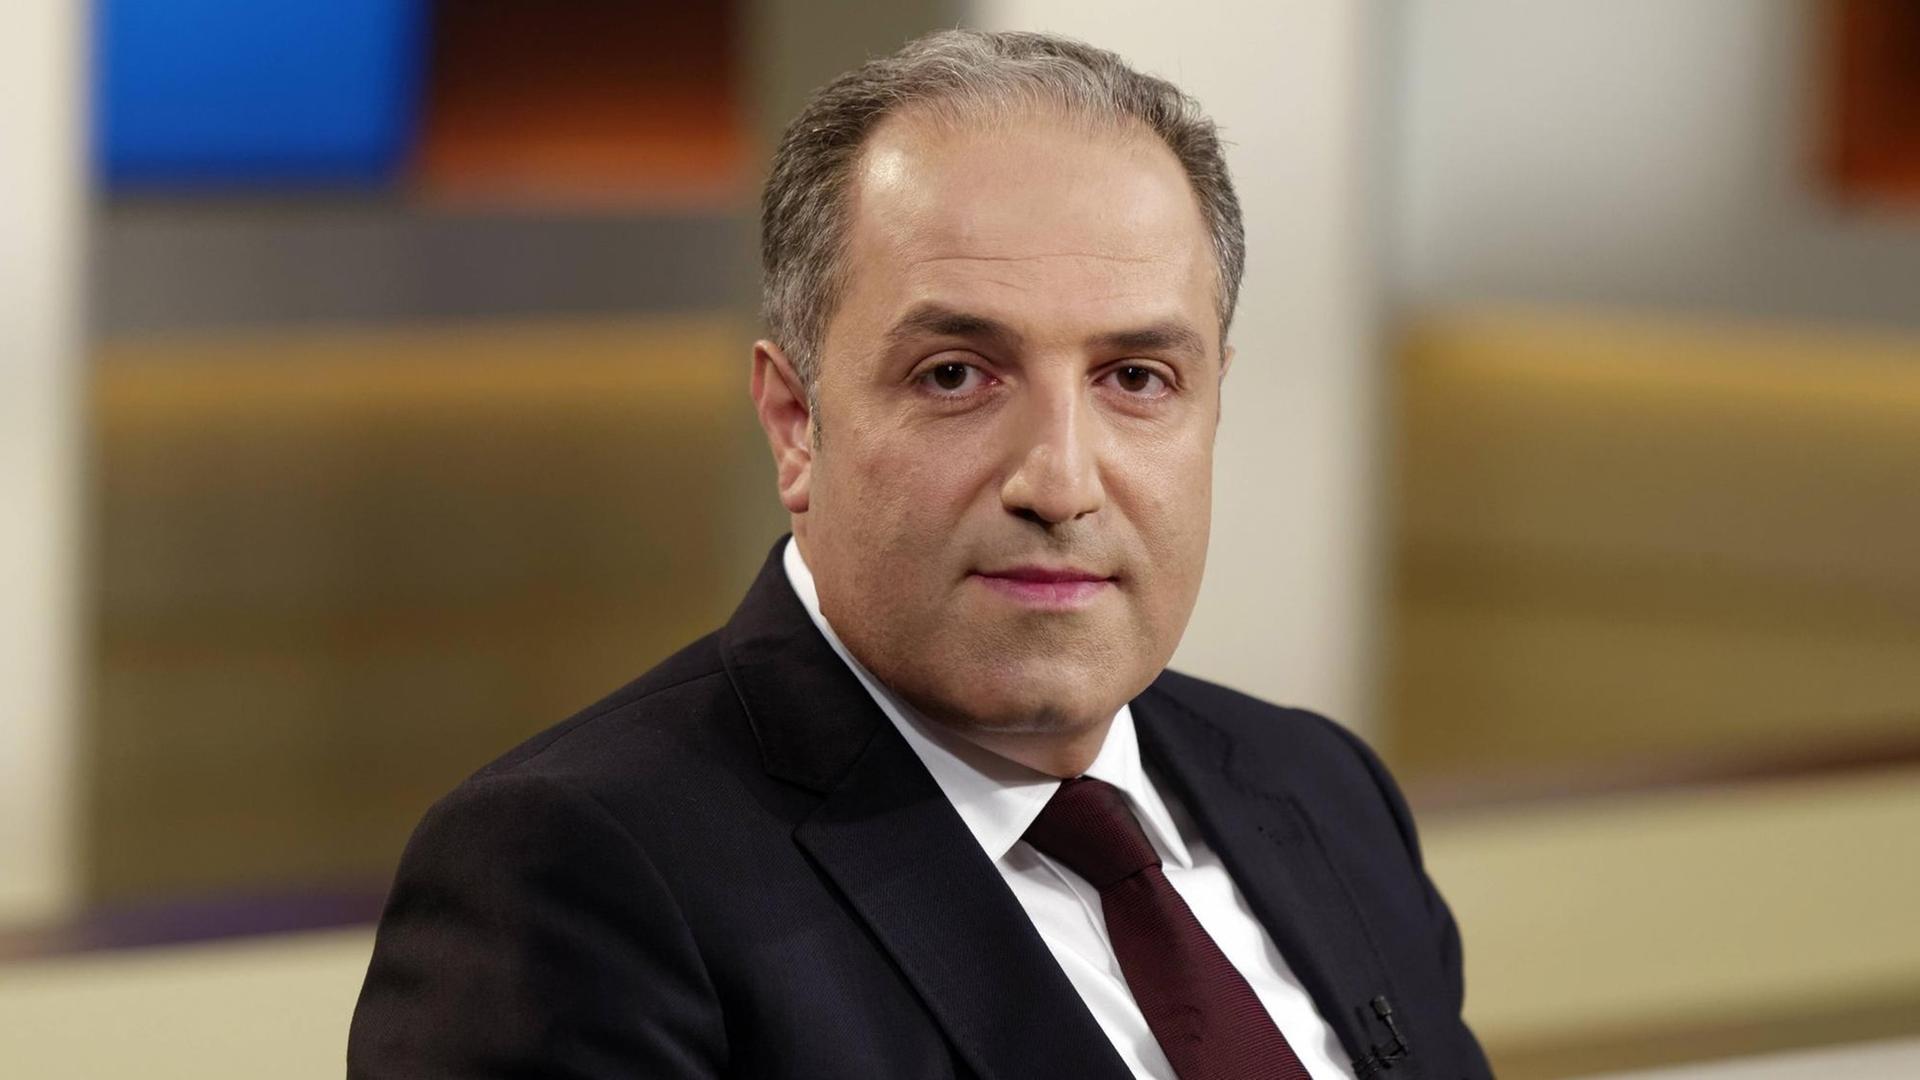 Mustafa Yeneroglu (AKP), Abgeordneter der Großen Nationalversammlung der Türkei und Ex-Generalsekretär der Islamischen Gemeinschaft Milli Görüs.